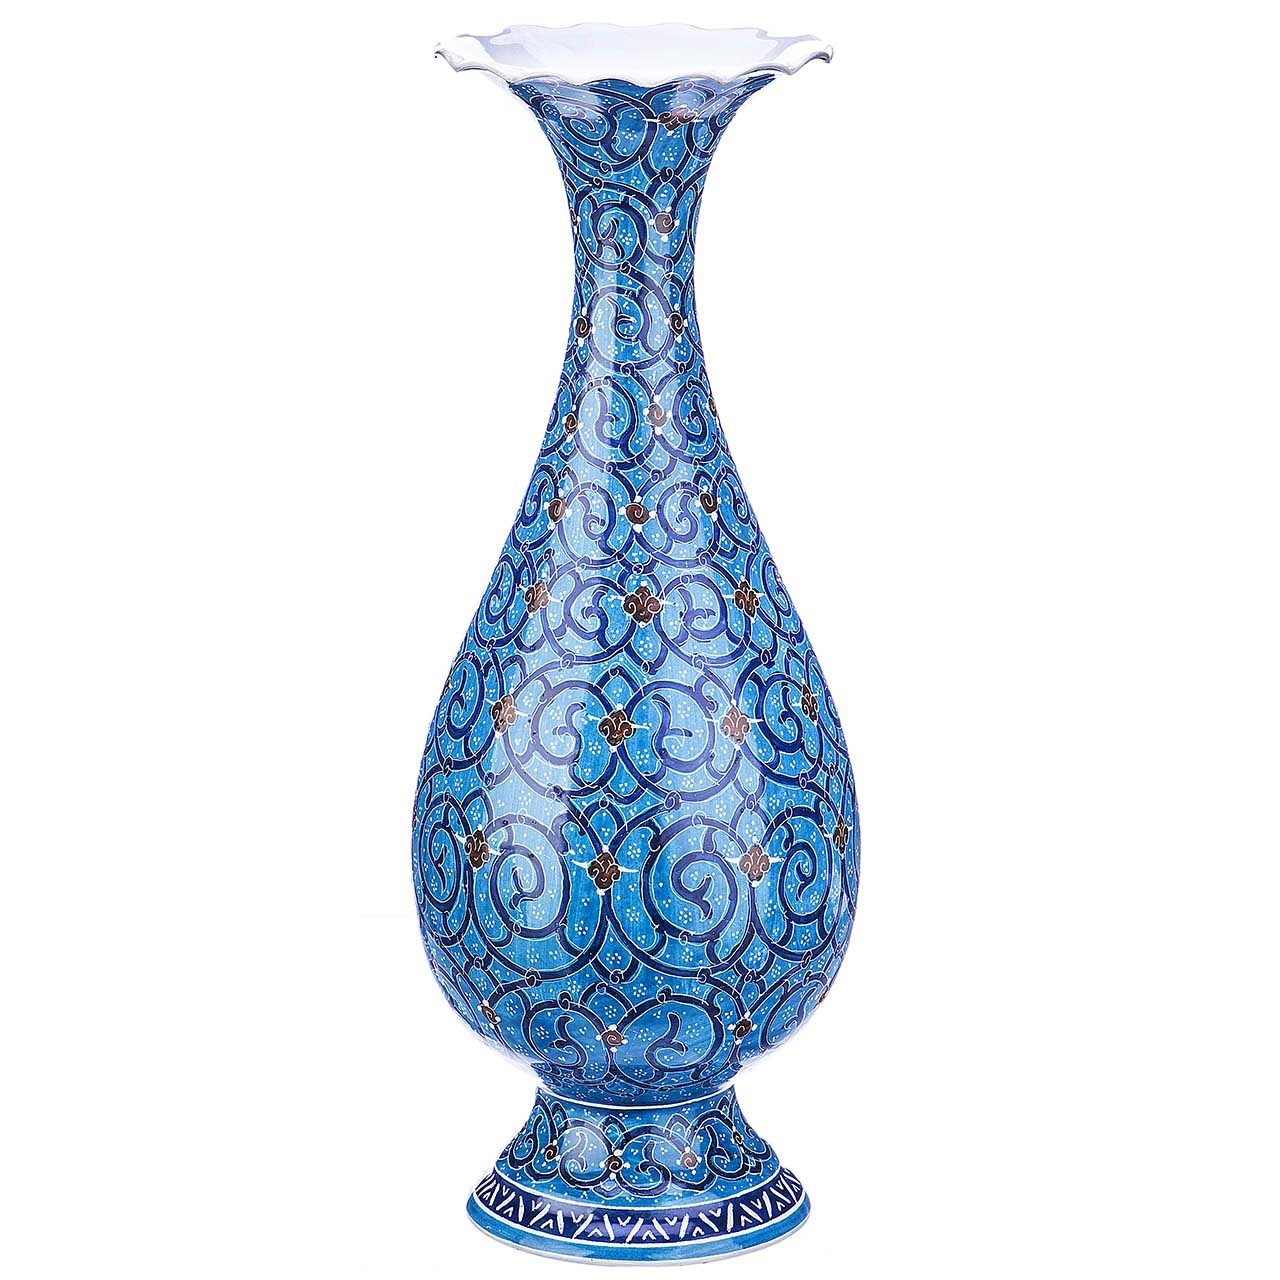 Esmaili Copper Enamel vase in 20 cm of height 